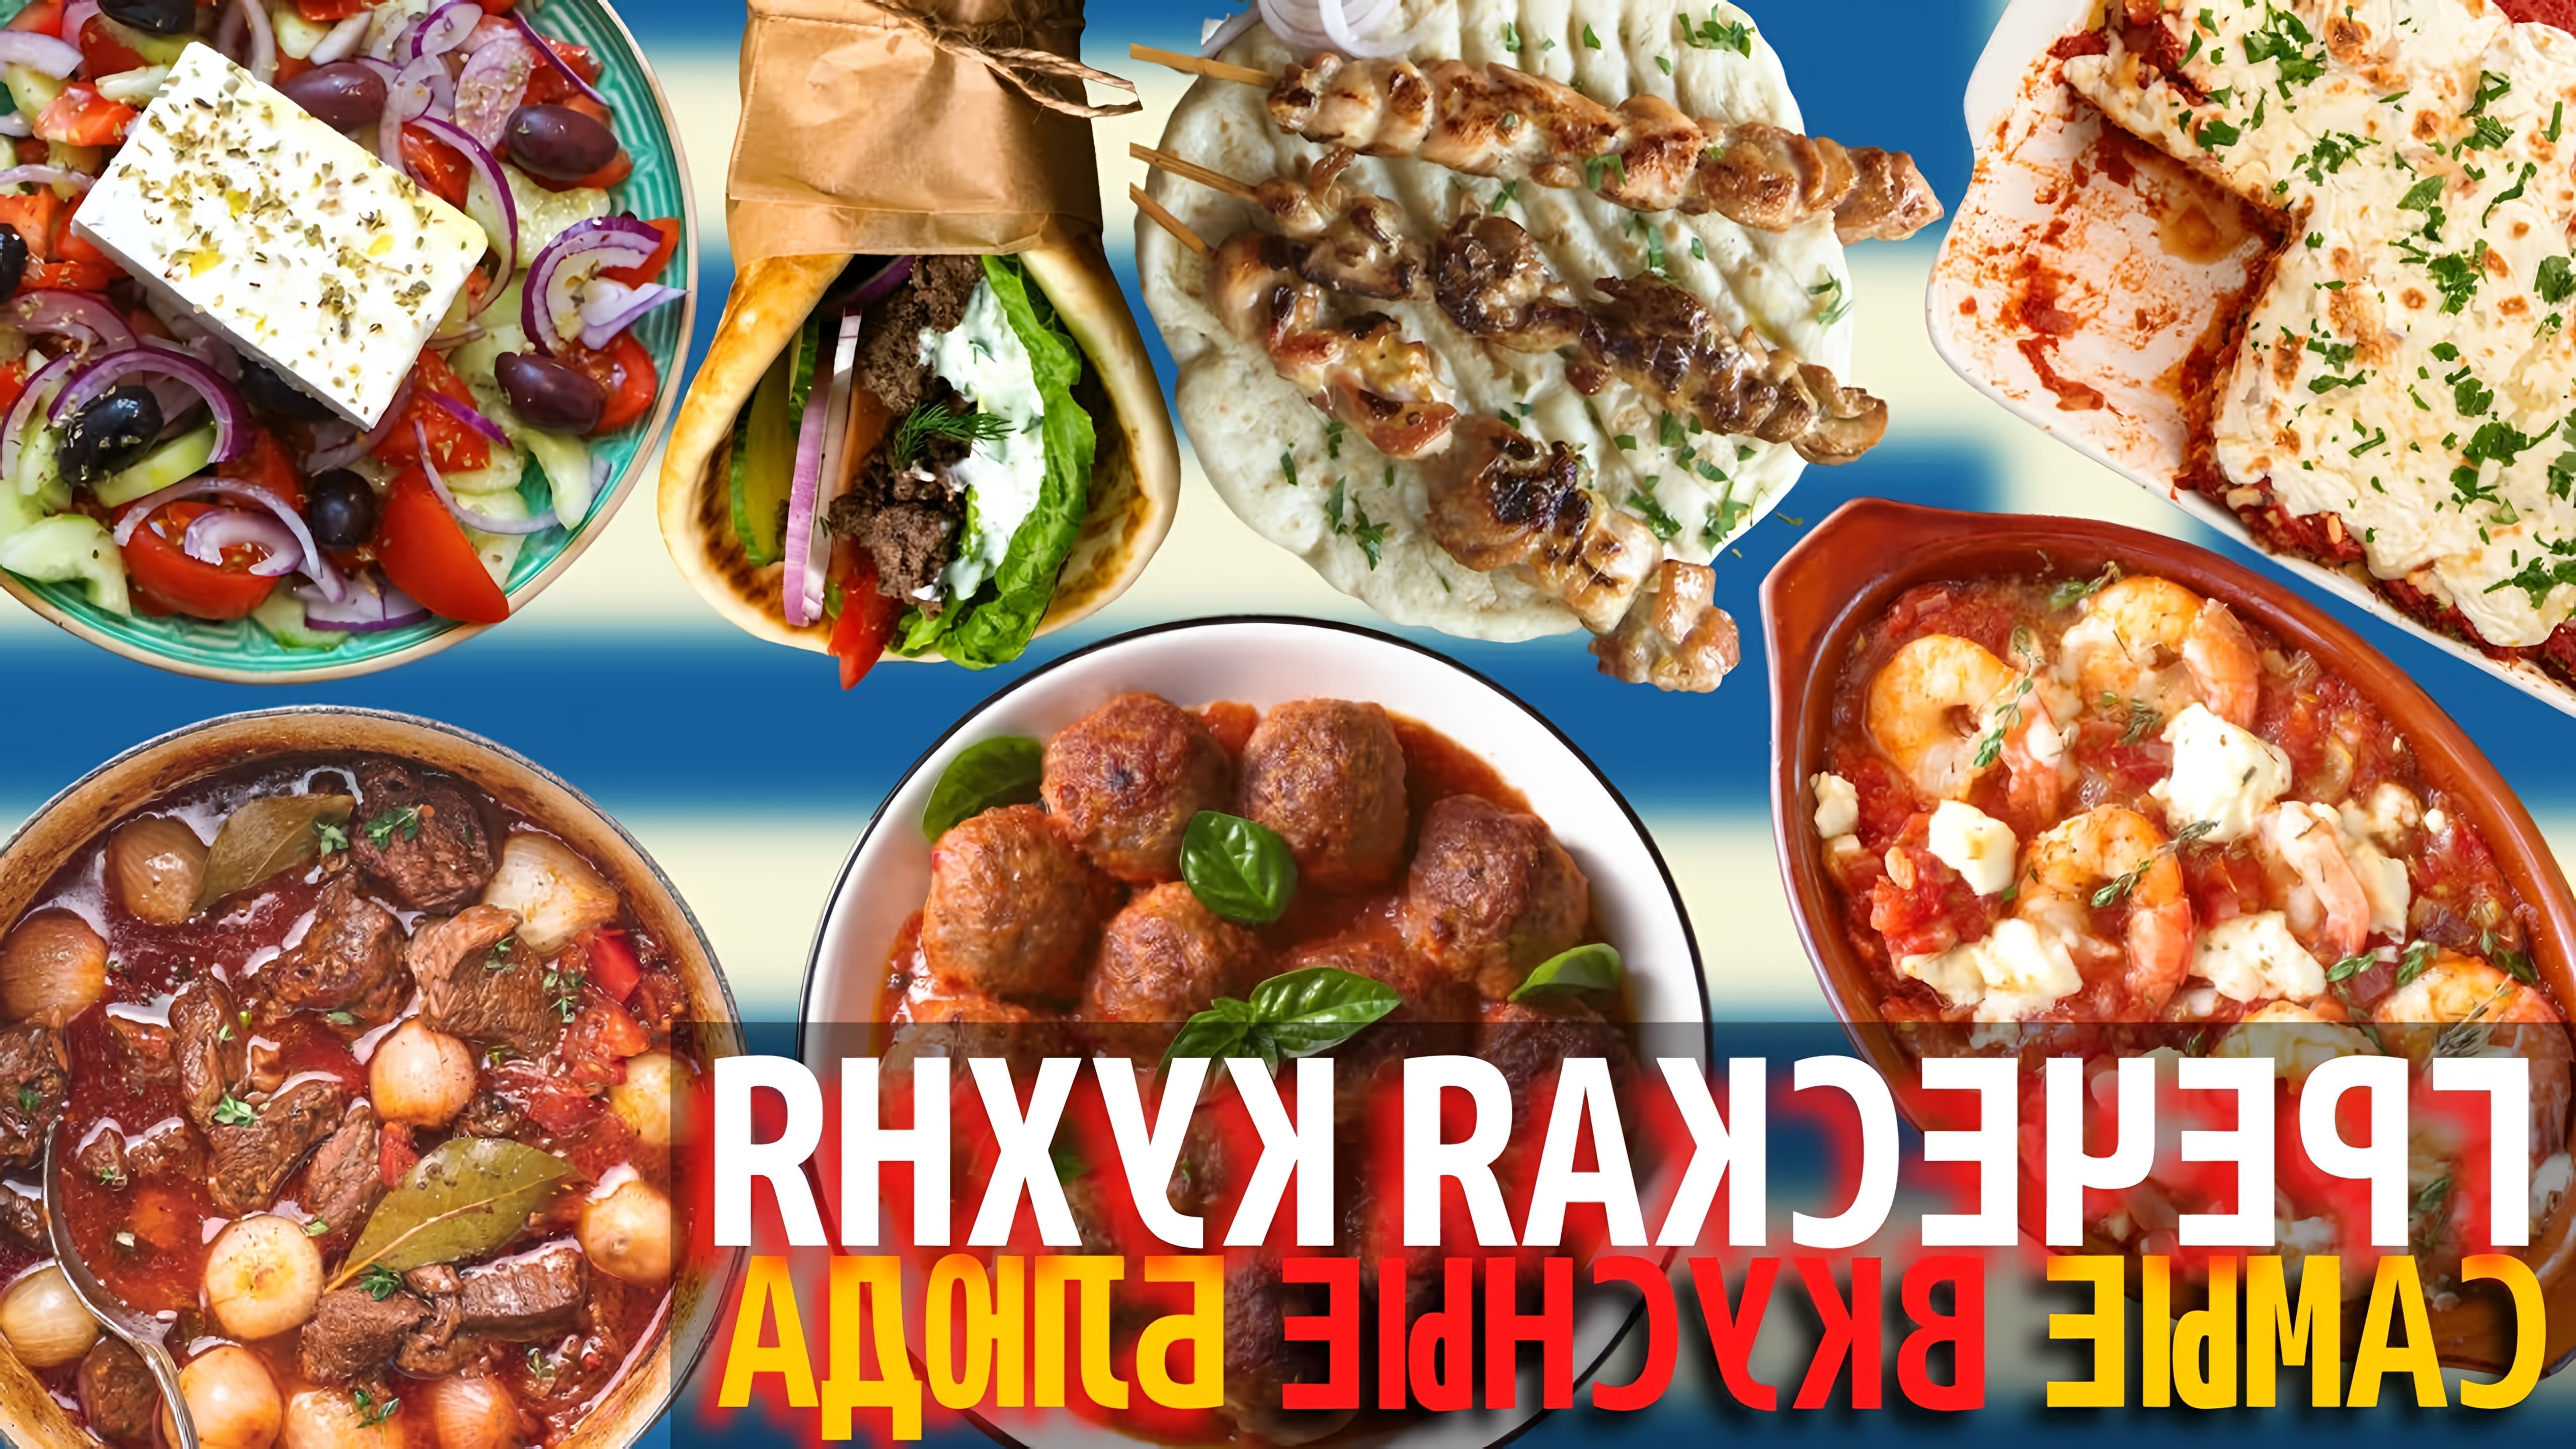 Греческая кухня известна своей красочностью, изысканностью и полезностью